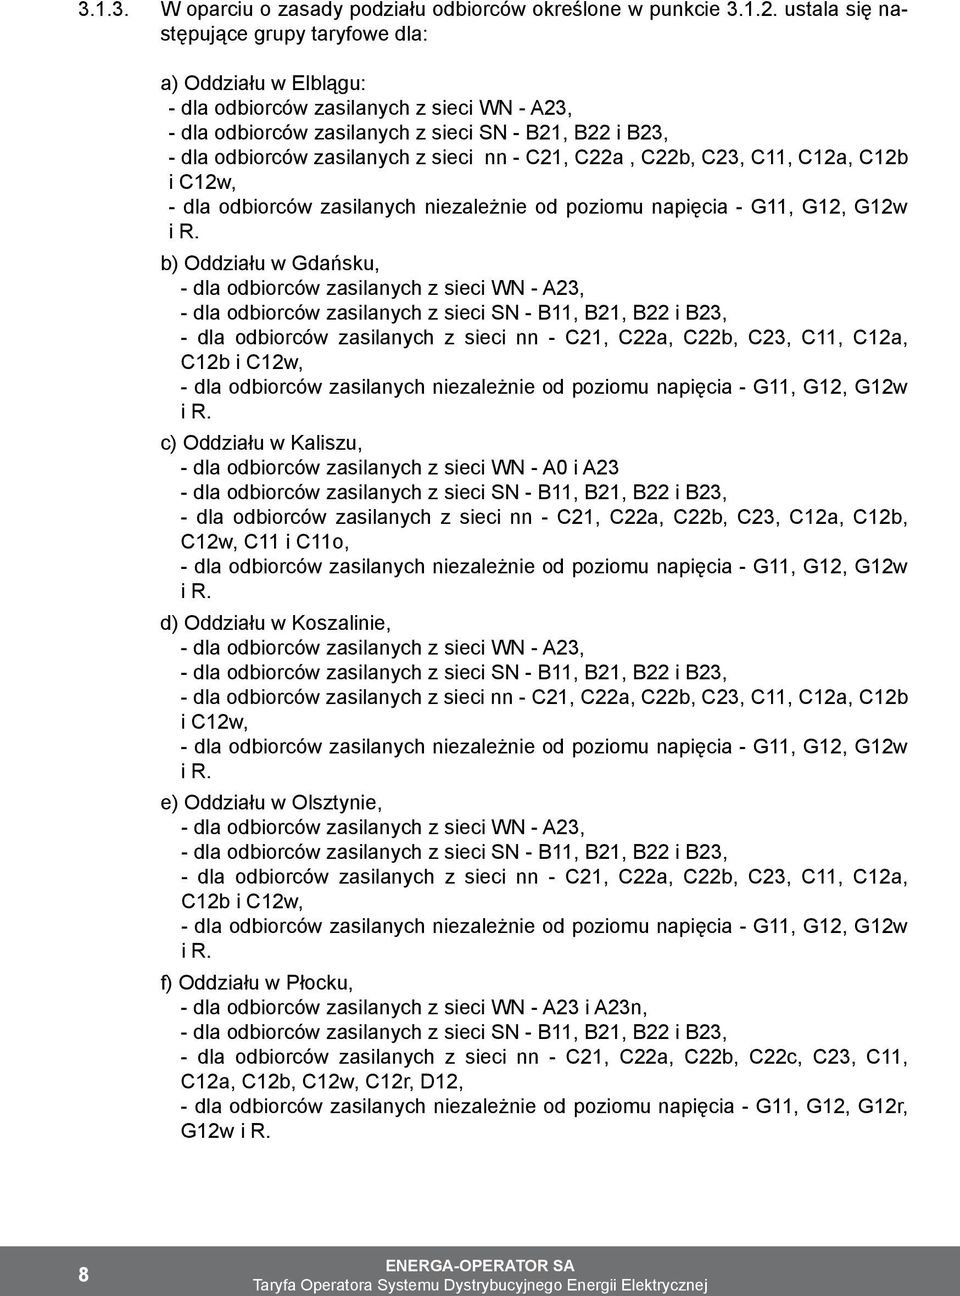 sieci nn - C21, C22a, C22b, C23, C11, C12a, C12b i C12w, - dla odbiorców zasilanych niezależnie od poziomu napięcia - G11, G12, G12w i R.